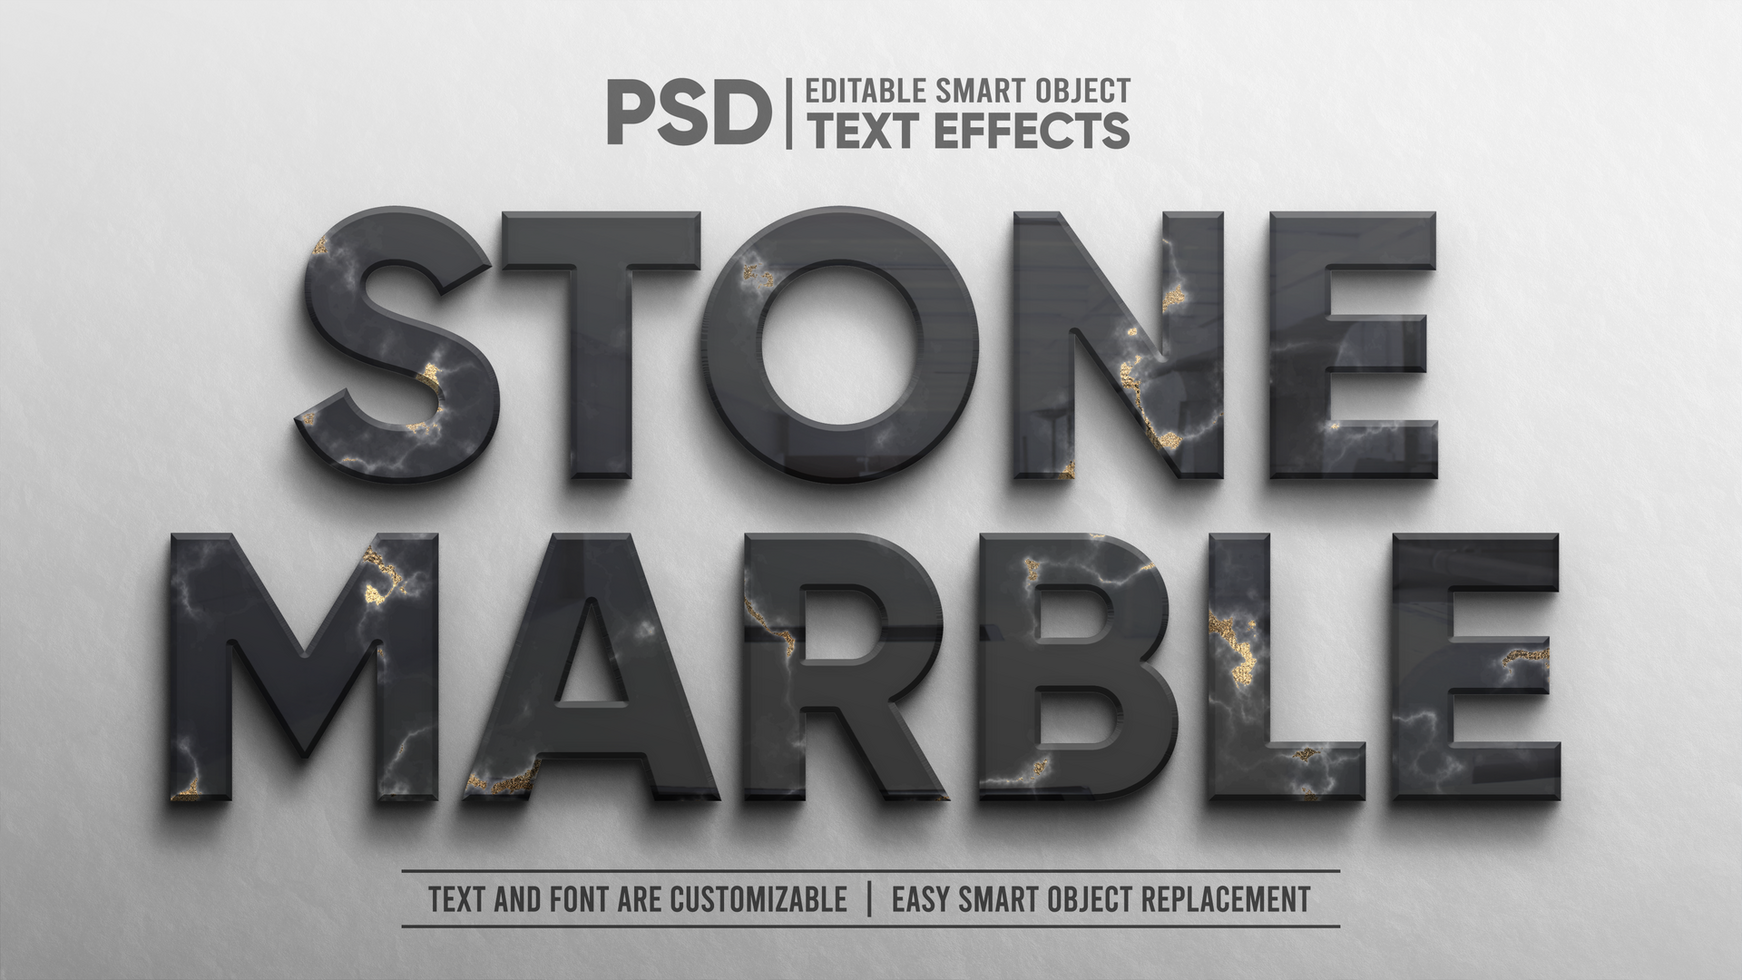 élégant marbre noir or gaufrer 3d réflexion modifiable texte effet maquette psd